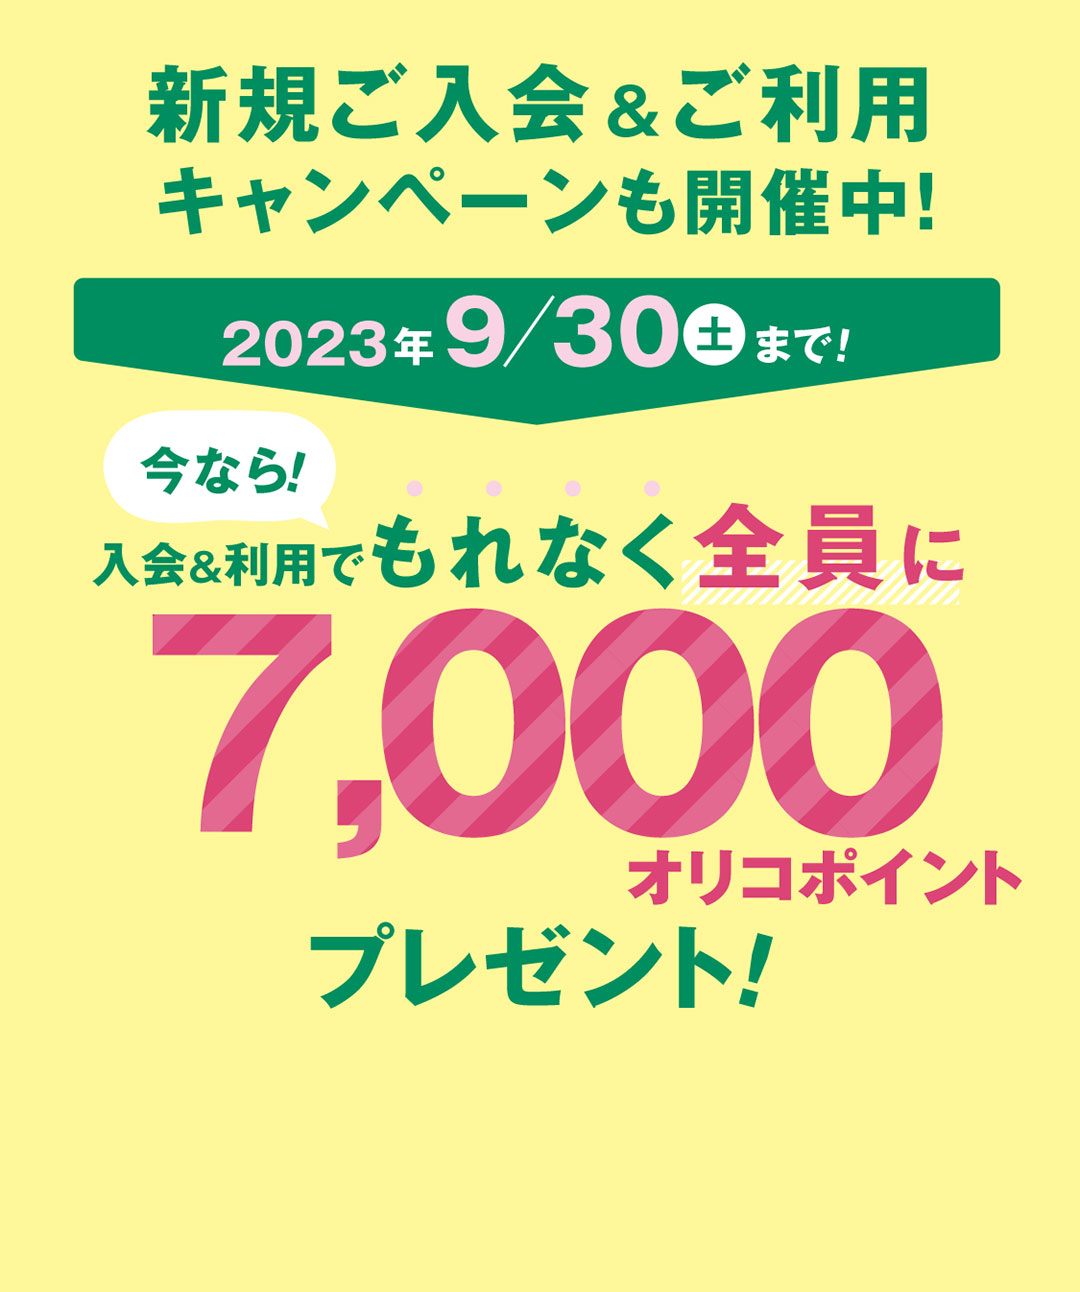 名古屋市営地下鉄でマナカのオートチャージサービスを利用できる、唯一のカード